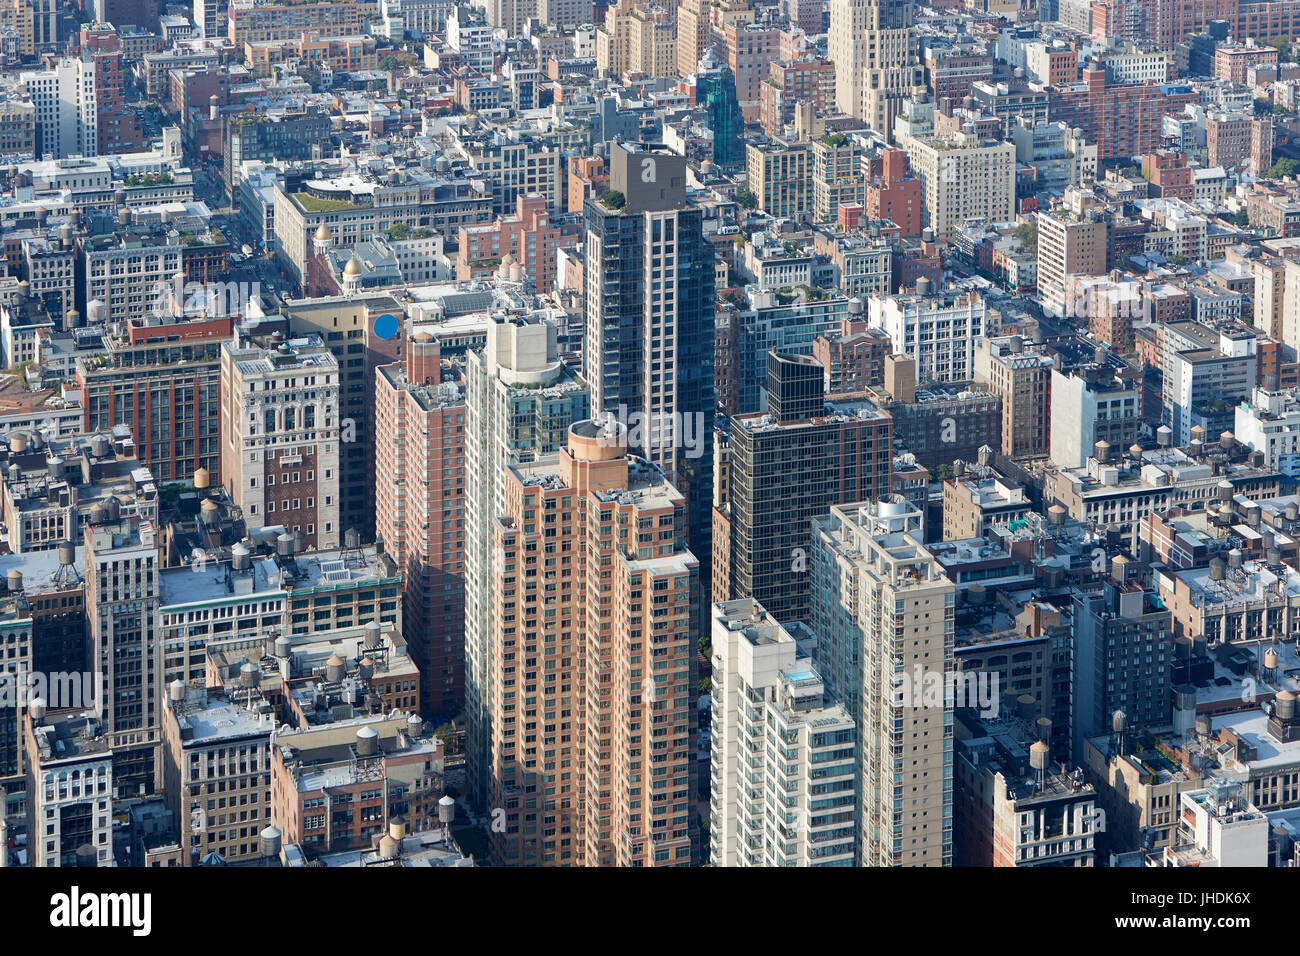 New York City Manhattan skyline vue aérienne avec des bâtiments et des rues Banque D'Images